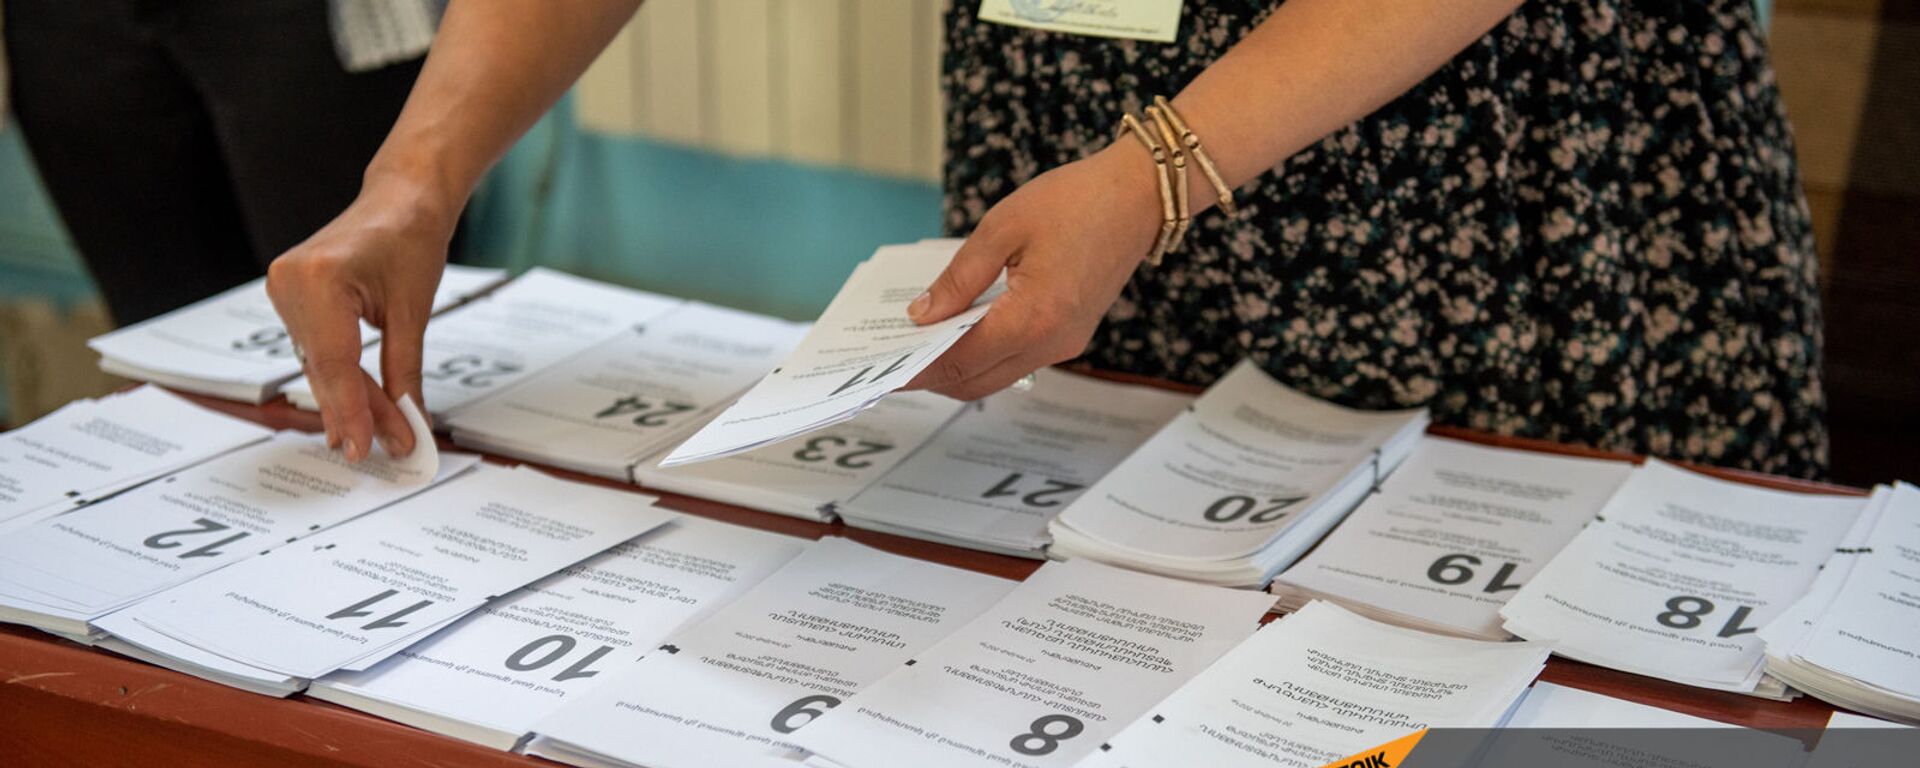 Сотрудник избирательной комиссии собирает пакет бюллетеней в избирательном участке 29/29 (20 июня 2021). Ариндж - Sputnik Արմենիա, 1920, 22.06.2021